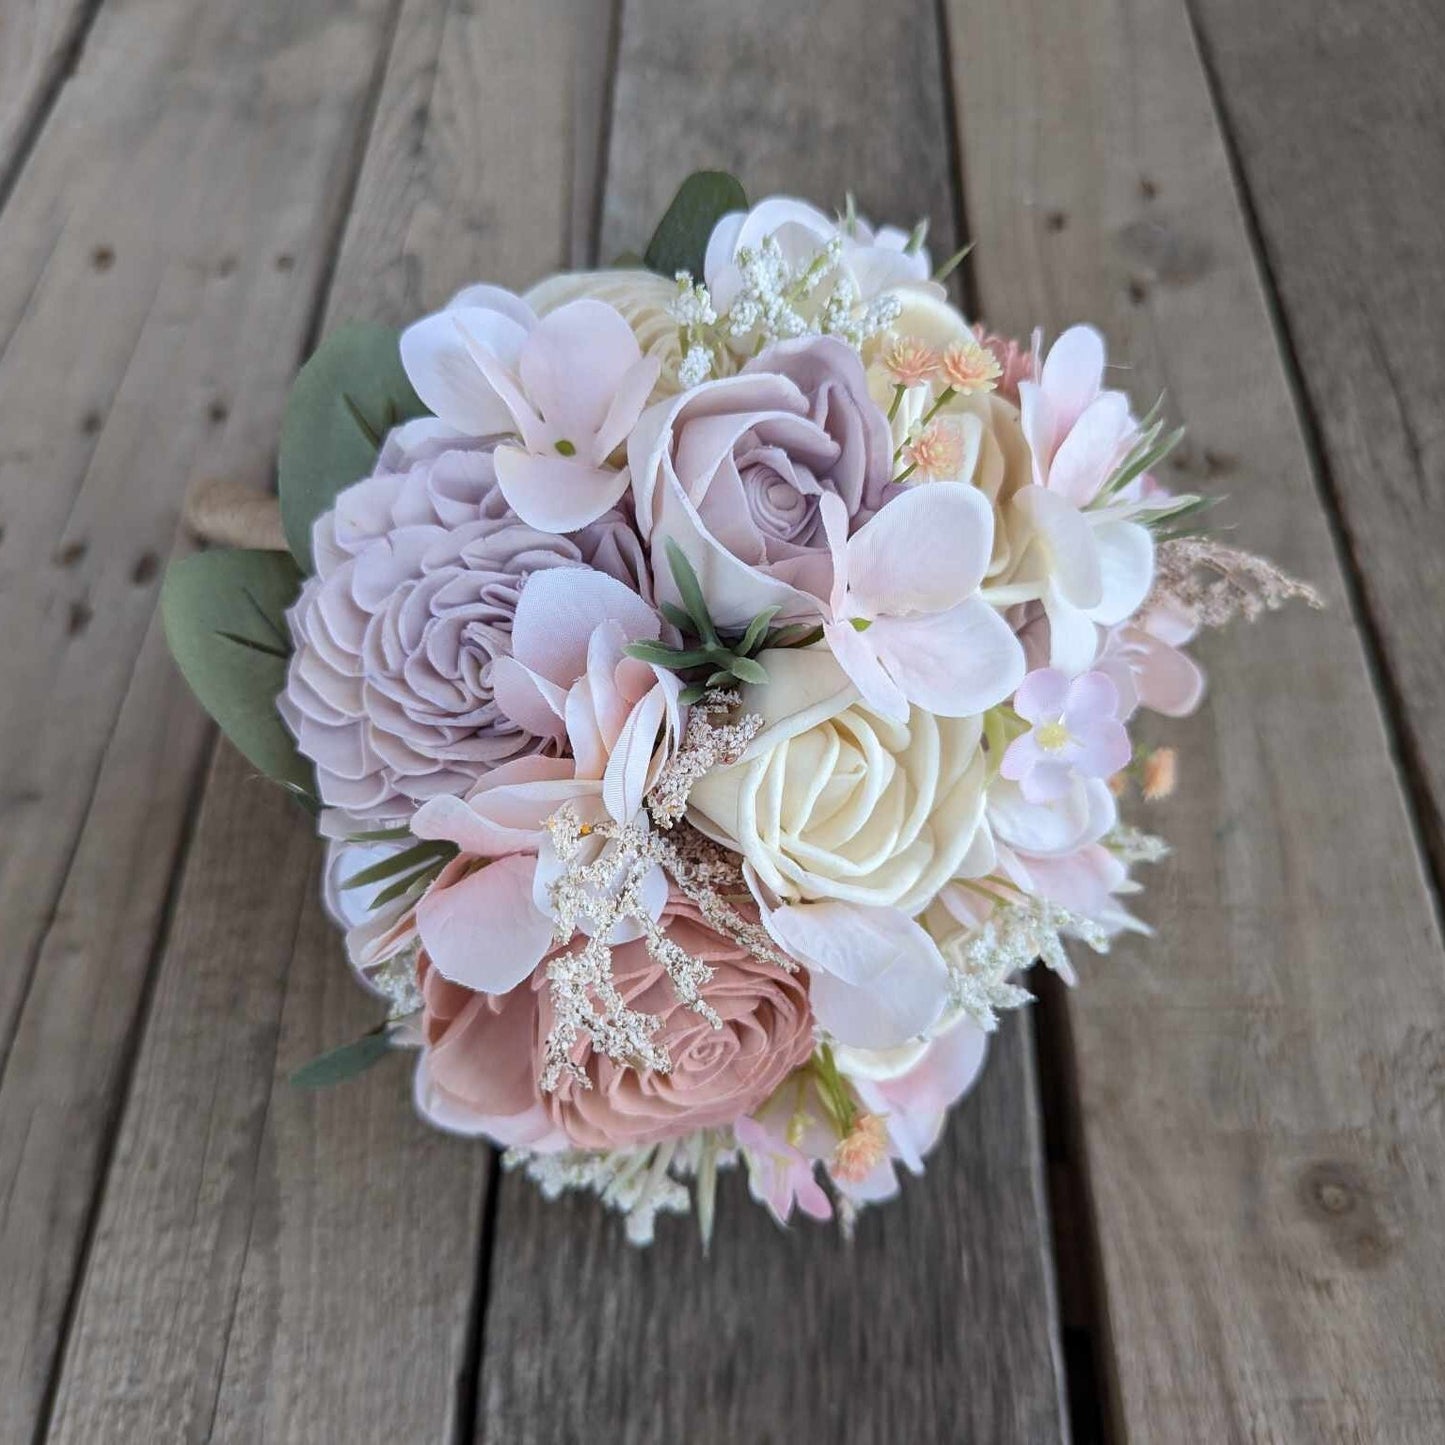 Lavender & Blush Sola Wood Flower Bouquet, Wedding Elopement Bouquet, Destination Bridal Bouquet, Wooden Bridesmaid Flowers